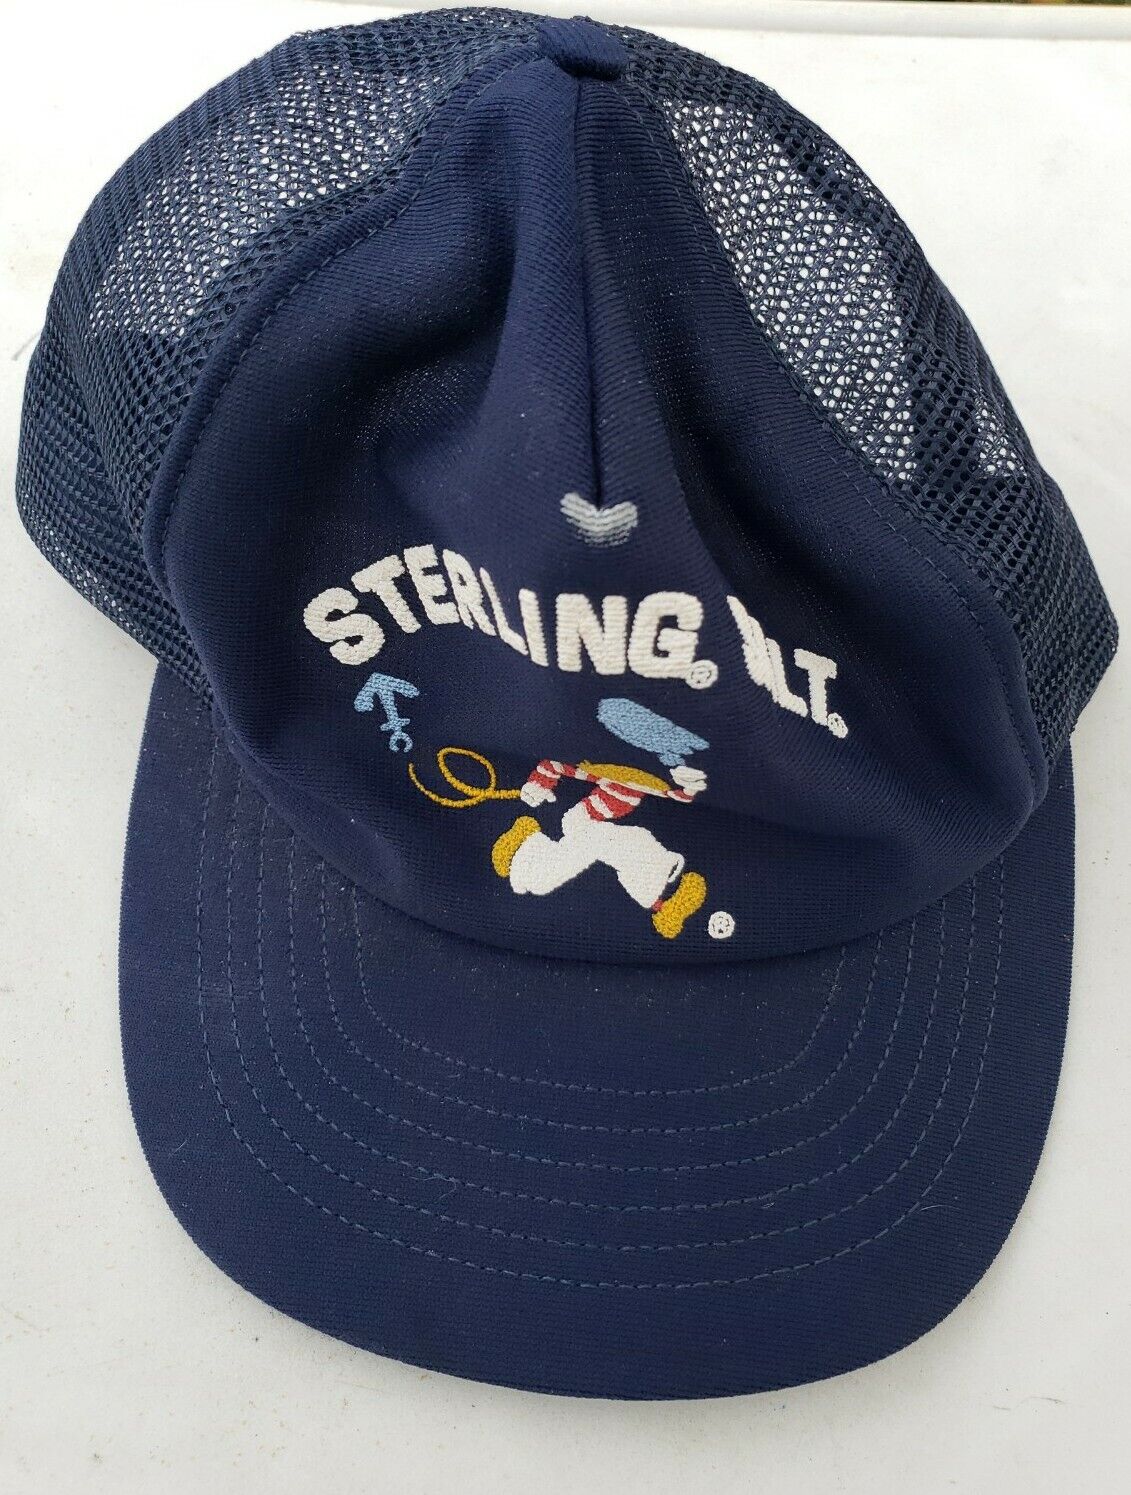 vintage cap hat mesh back snap STERLING SALT